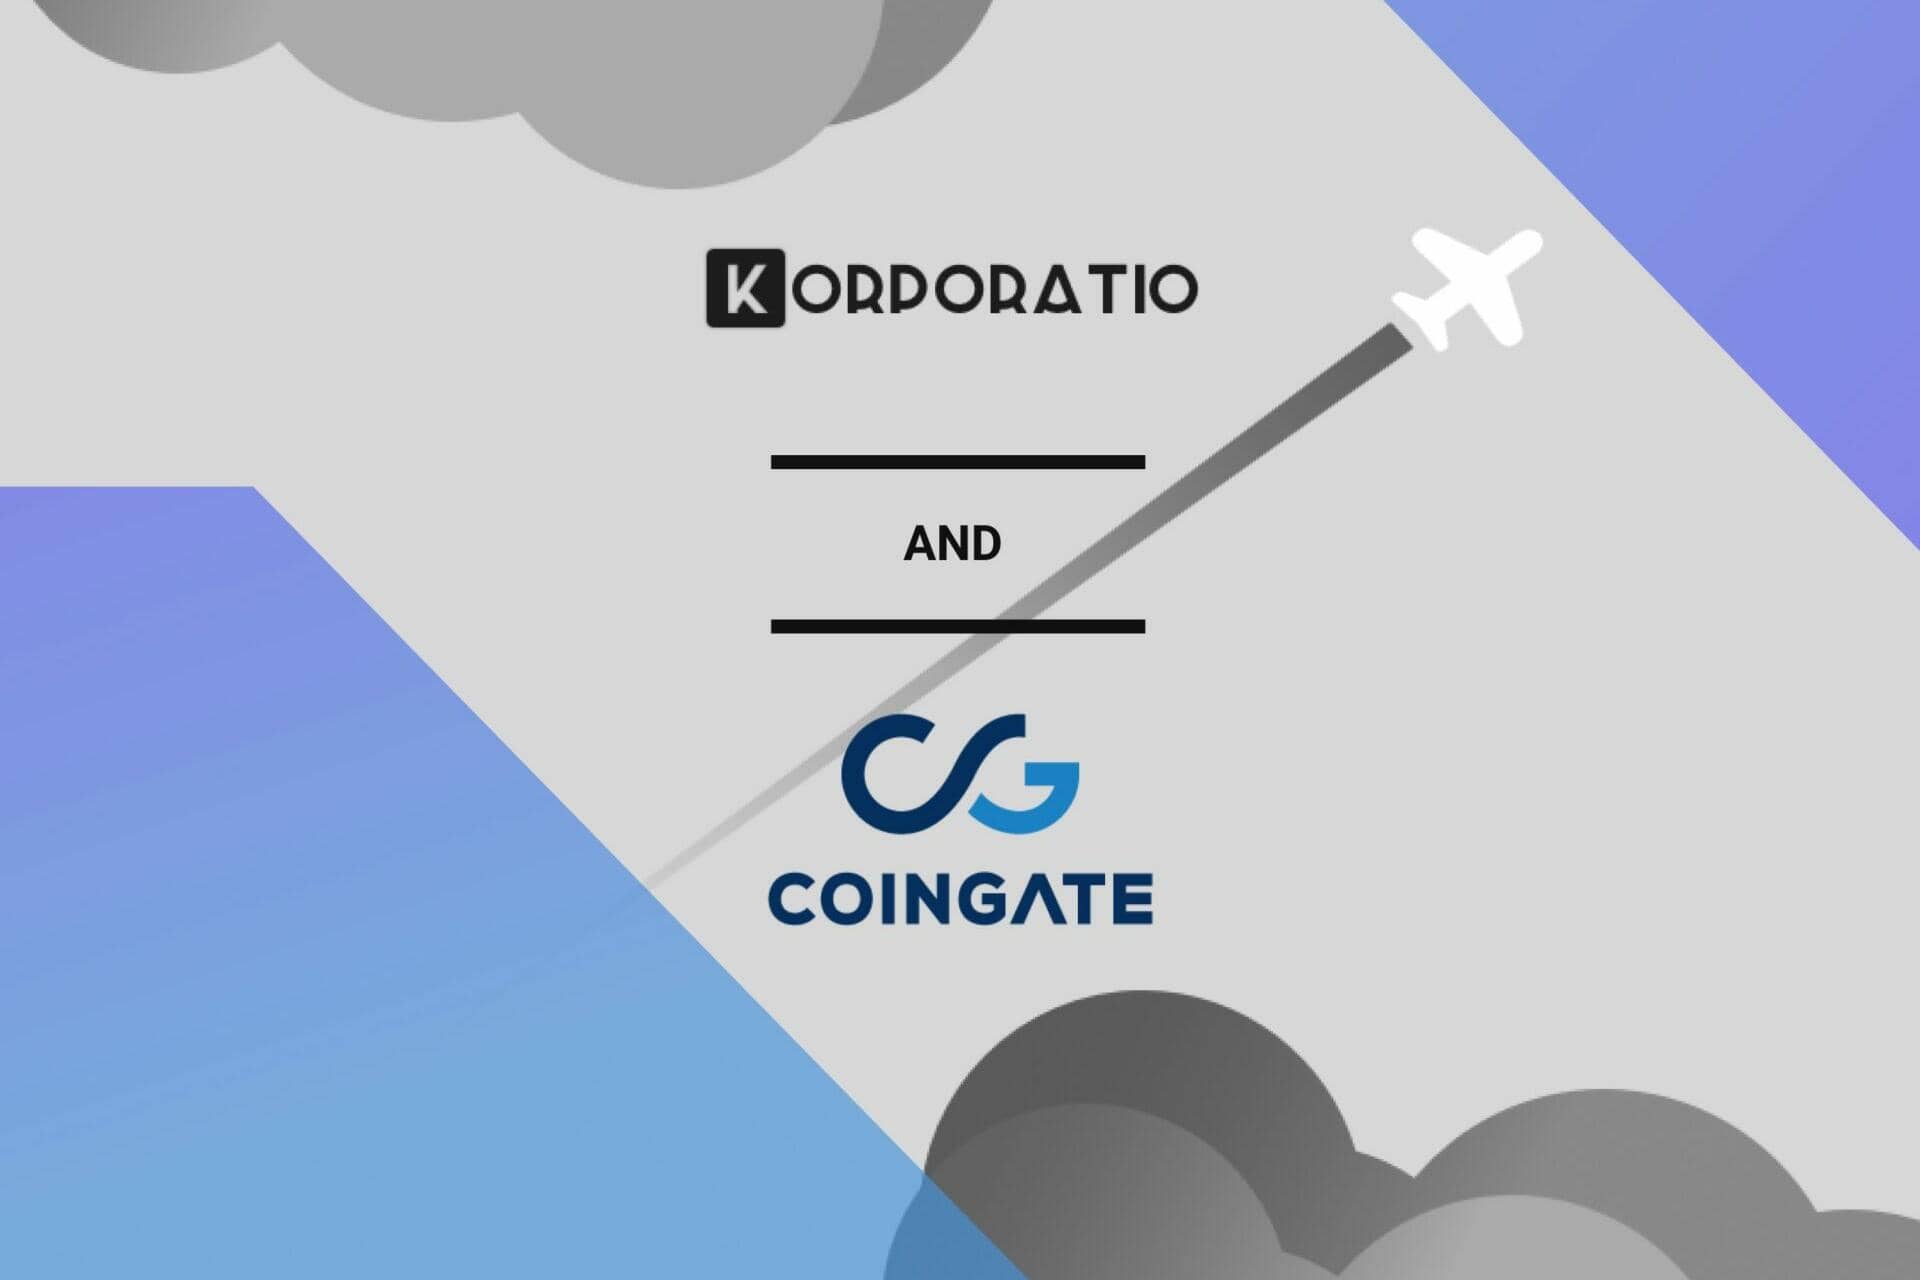 Pay you Korporatio smart company via Coingate